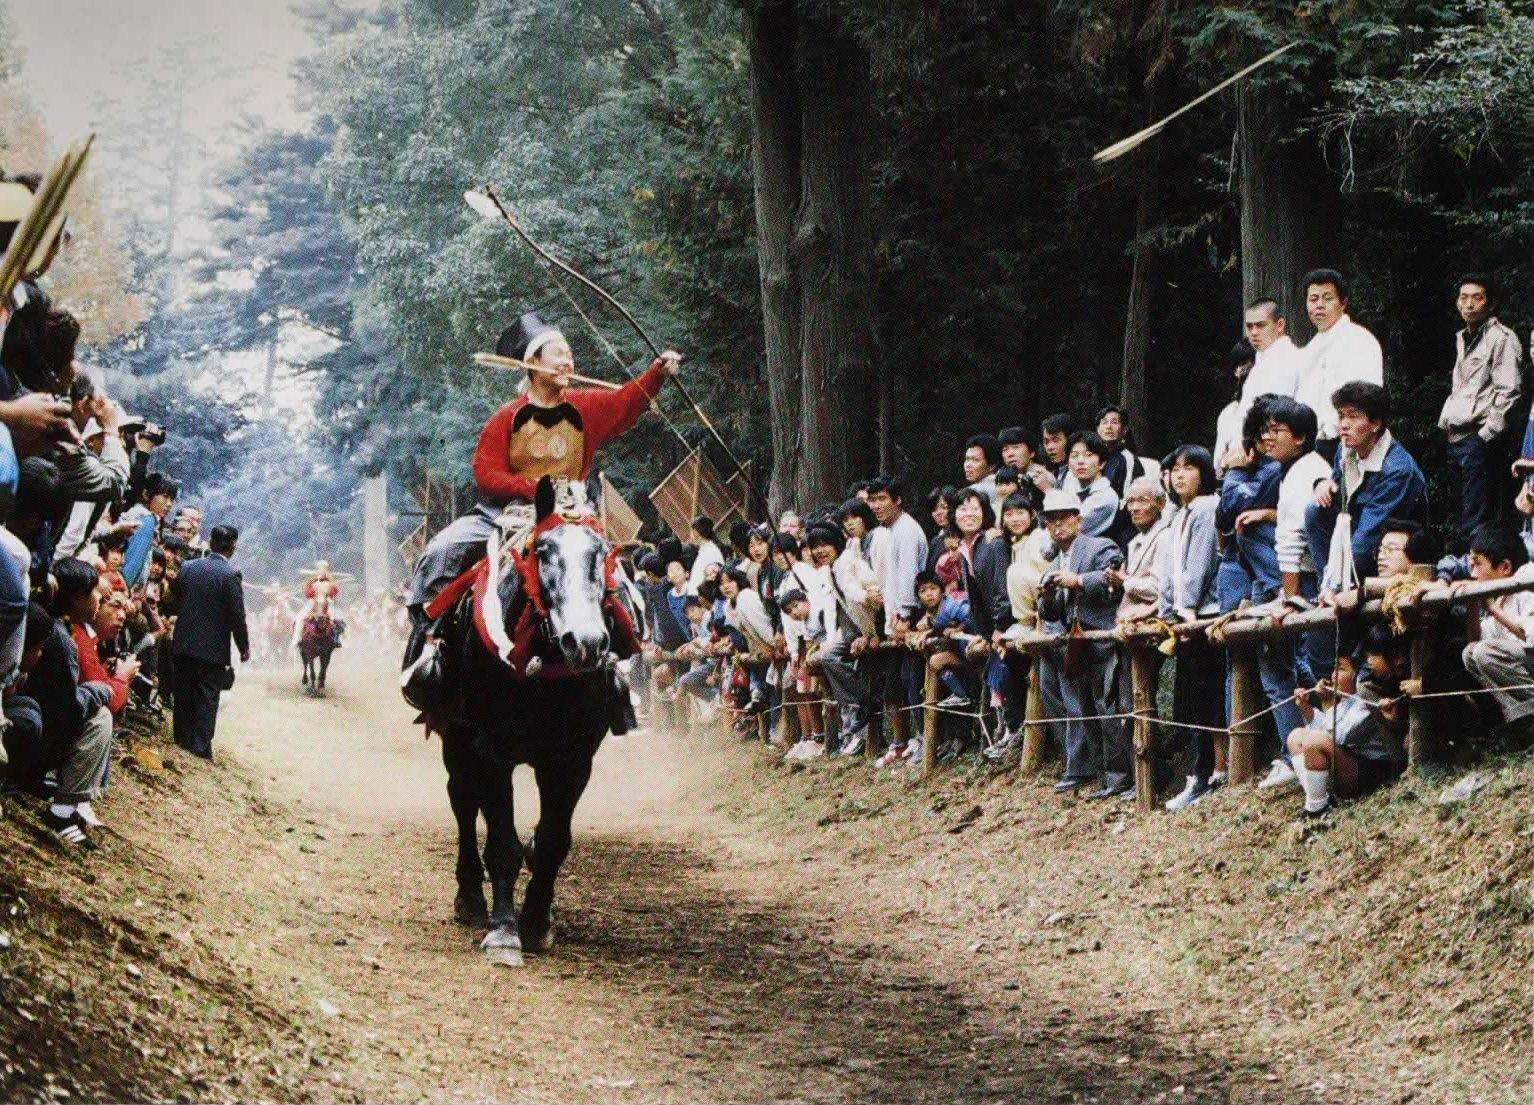 流鏑馬の衣装を身にまとった男性が走っている馬に乗り、観客が見守るなか的に向かって矢を射ている様子の写真